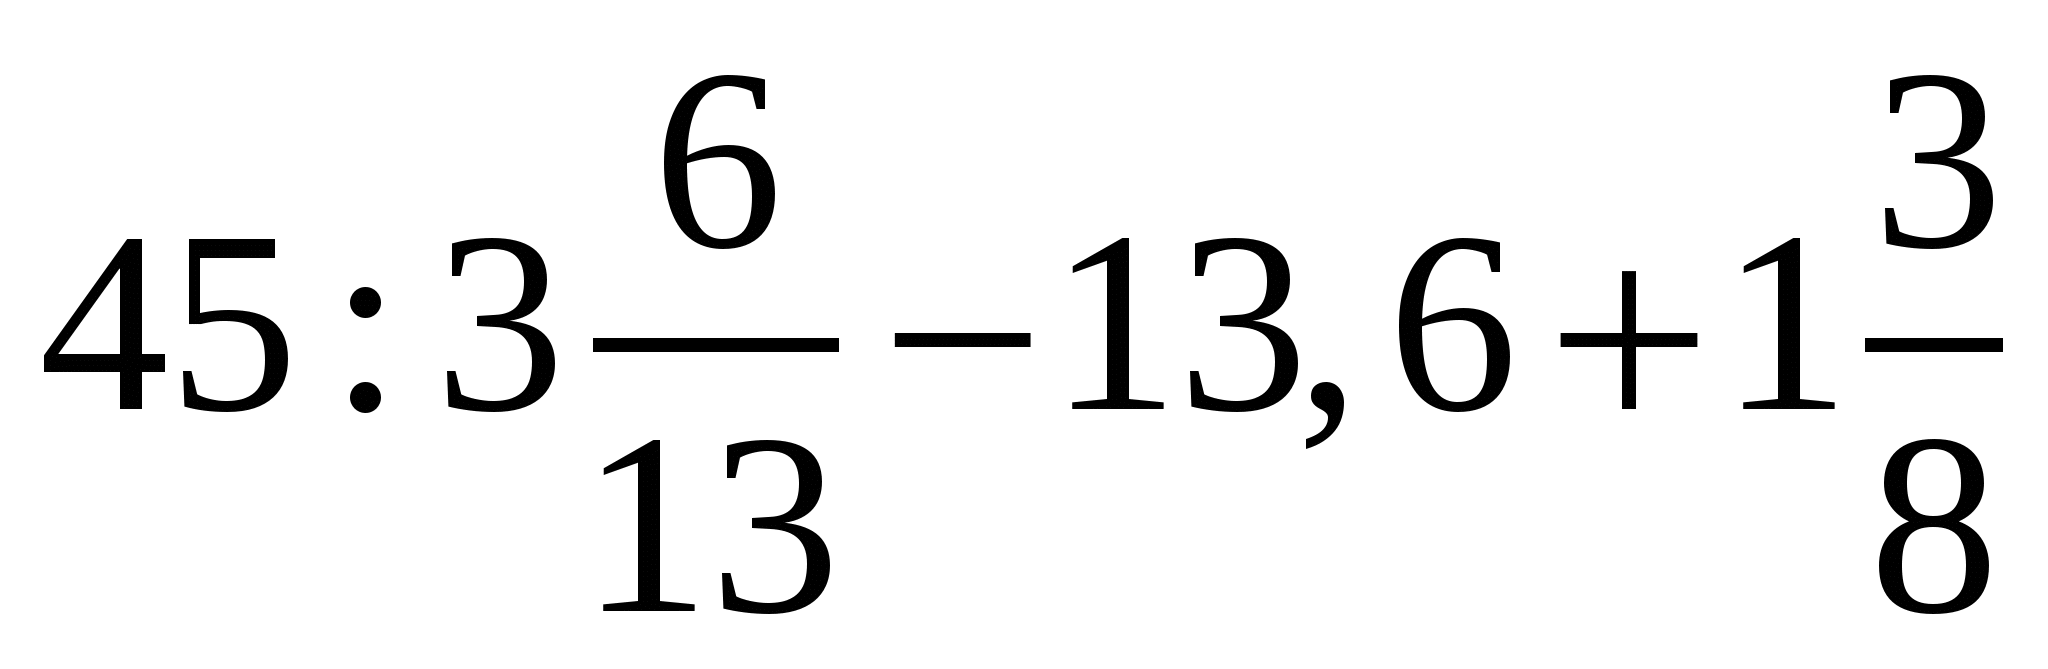 3 х 9 45. 2,6х-0,75=0,9х-35,6. 45 3 6/13-13.6+1 3/8 Решение. Уравнение 2.6х-0.75 0.9х-35.6. 2,6х-0, 75=0, 9х-35, 6 ответ.